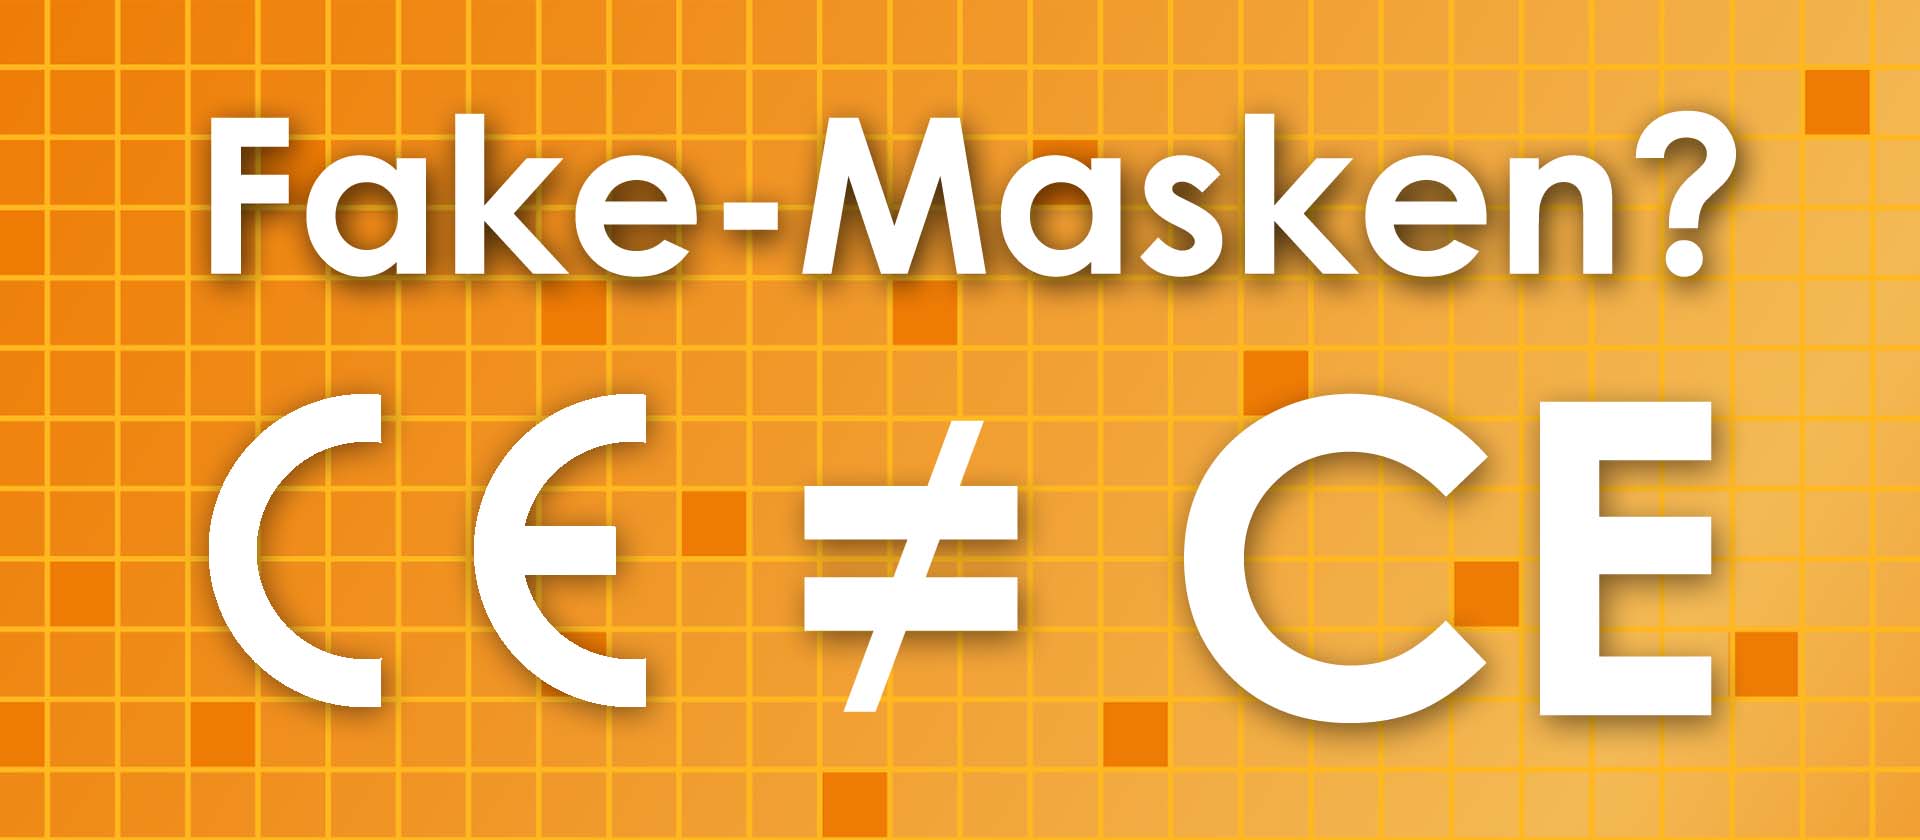 Wie kann ich mich vor Fake-Masken schützen